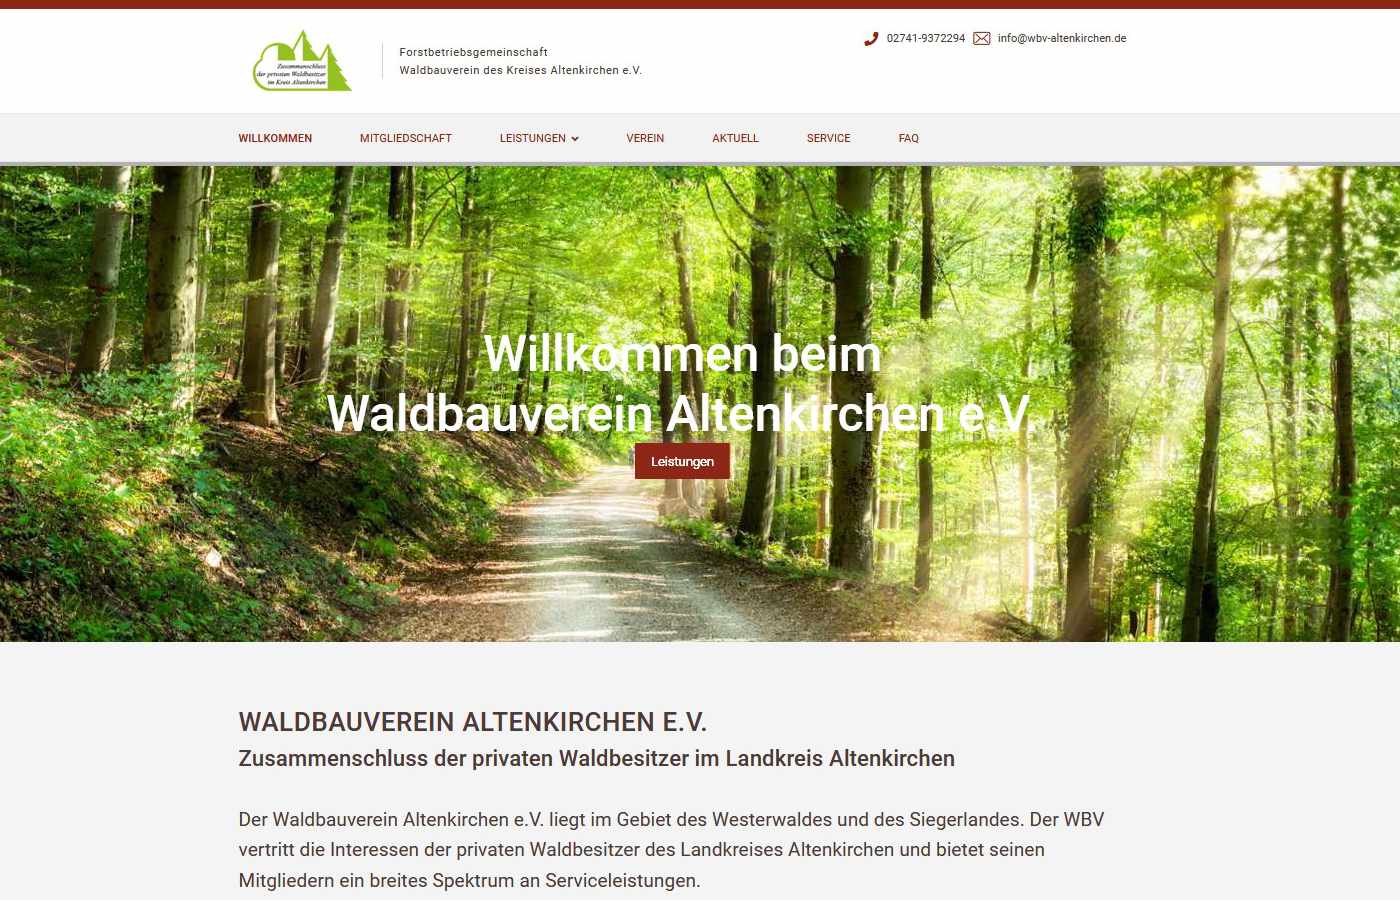 Startseite vom Waldbauverein Altenkirchen e.V.